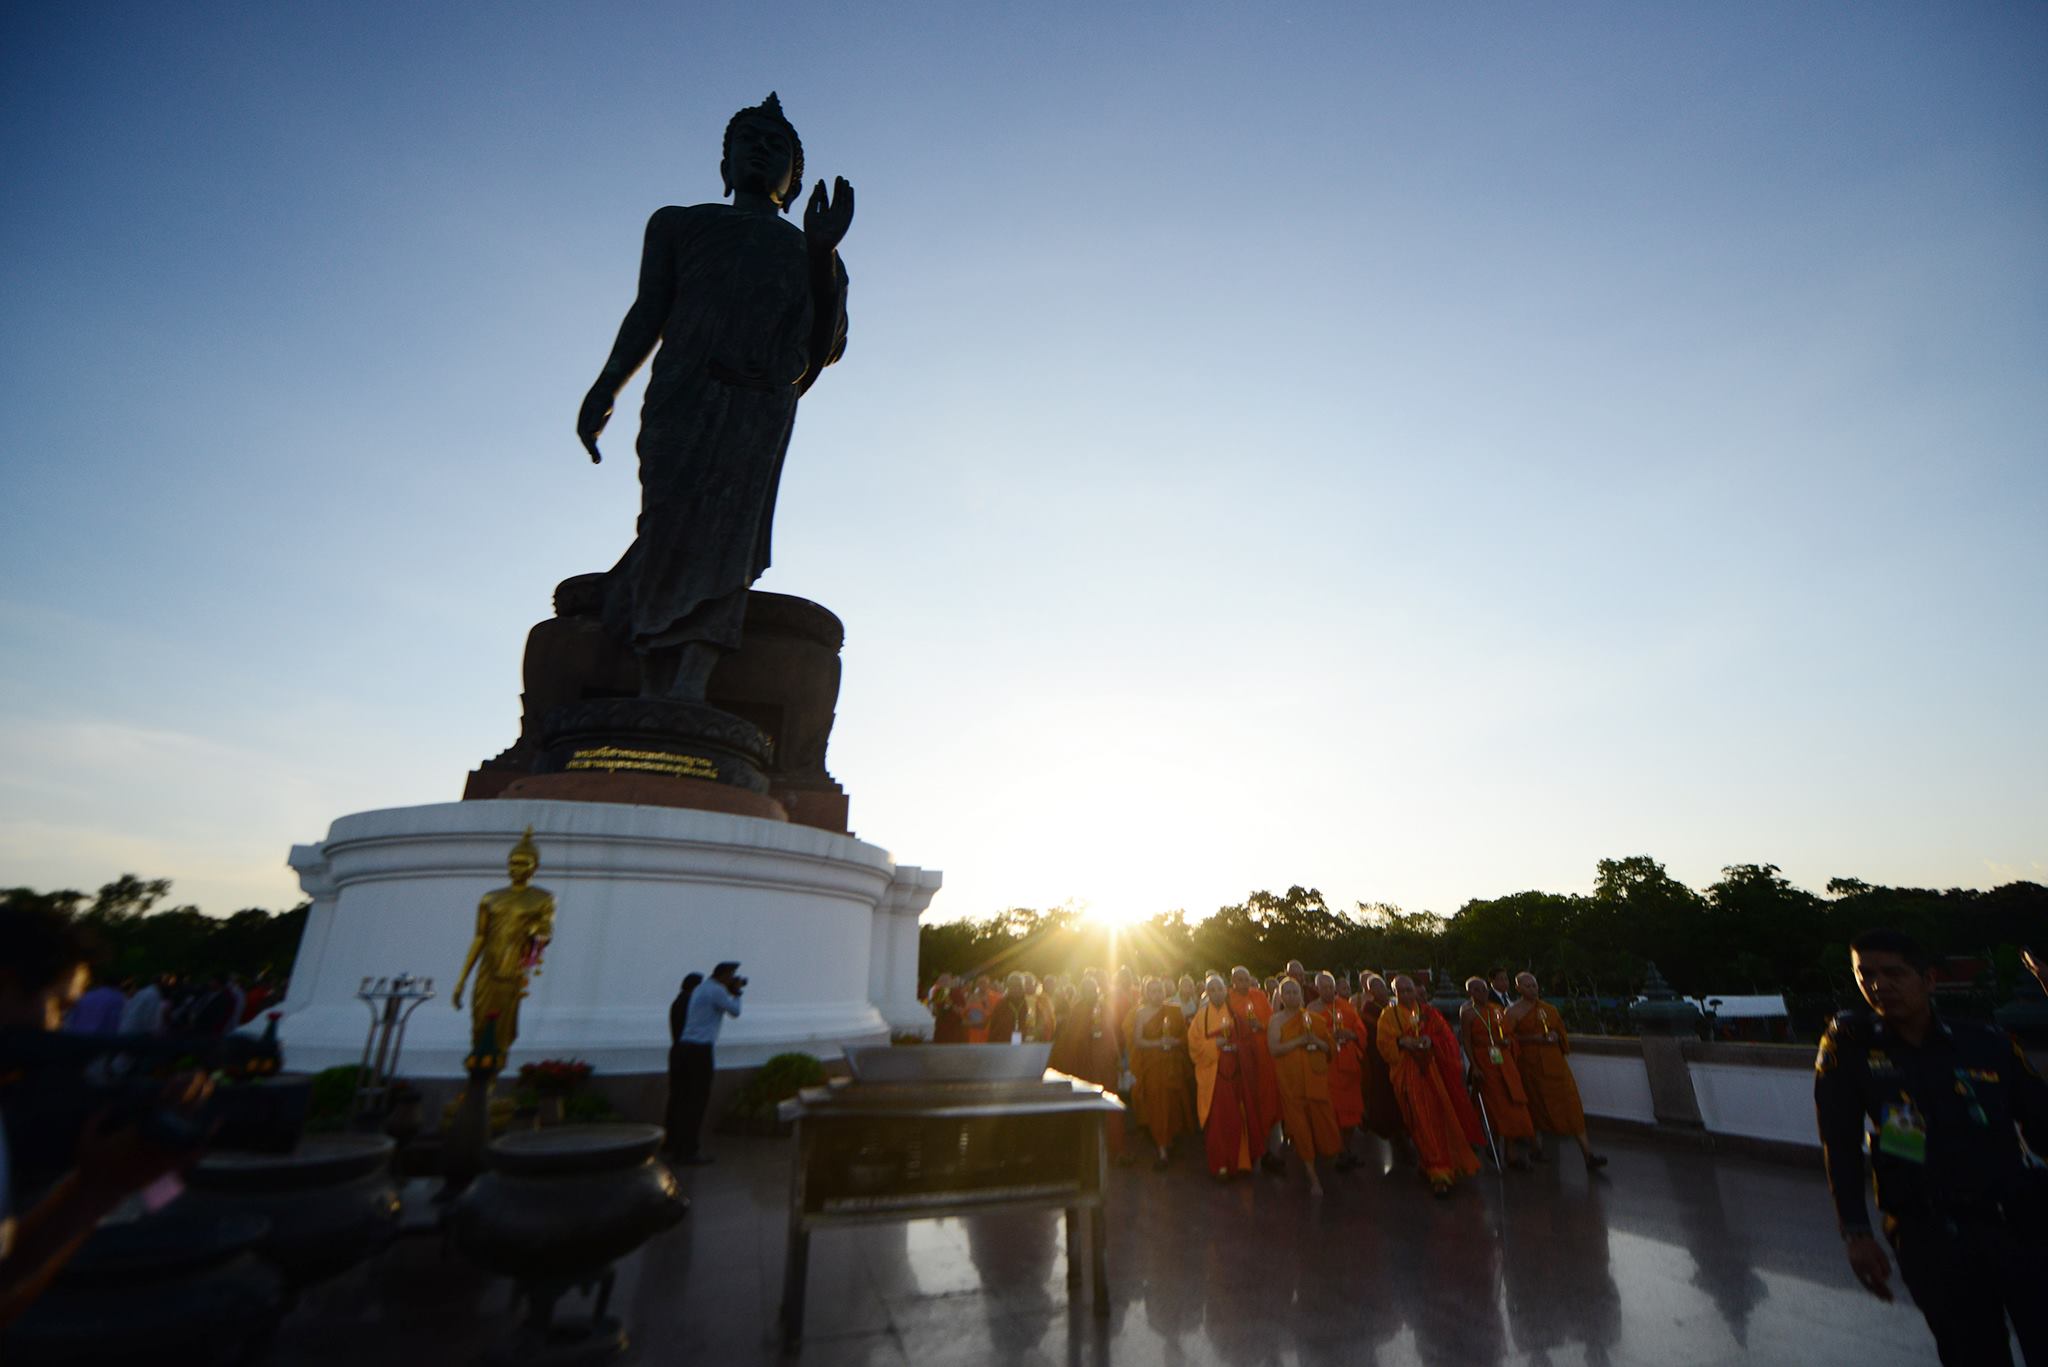 Candle-lit Procession in Srisakyadasapalanyana Buddha Statute’s compound, Buddhamonthon, Nakhornpathom